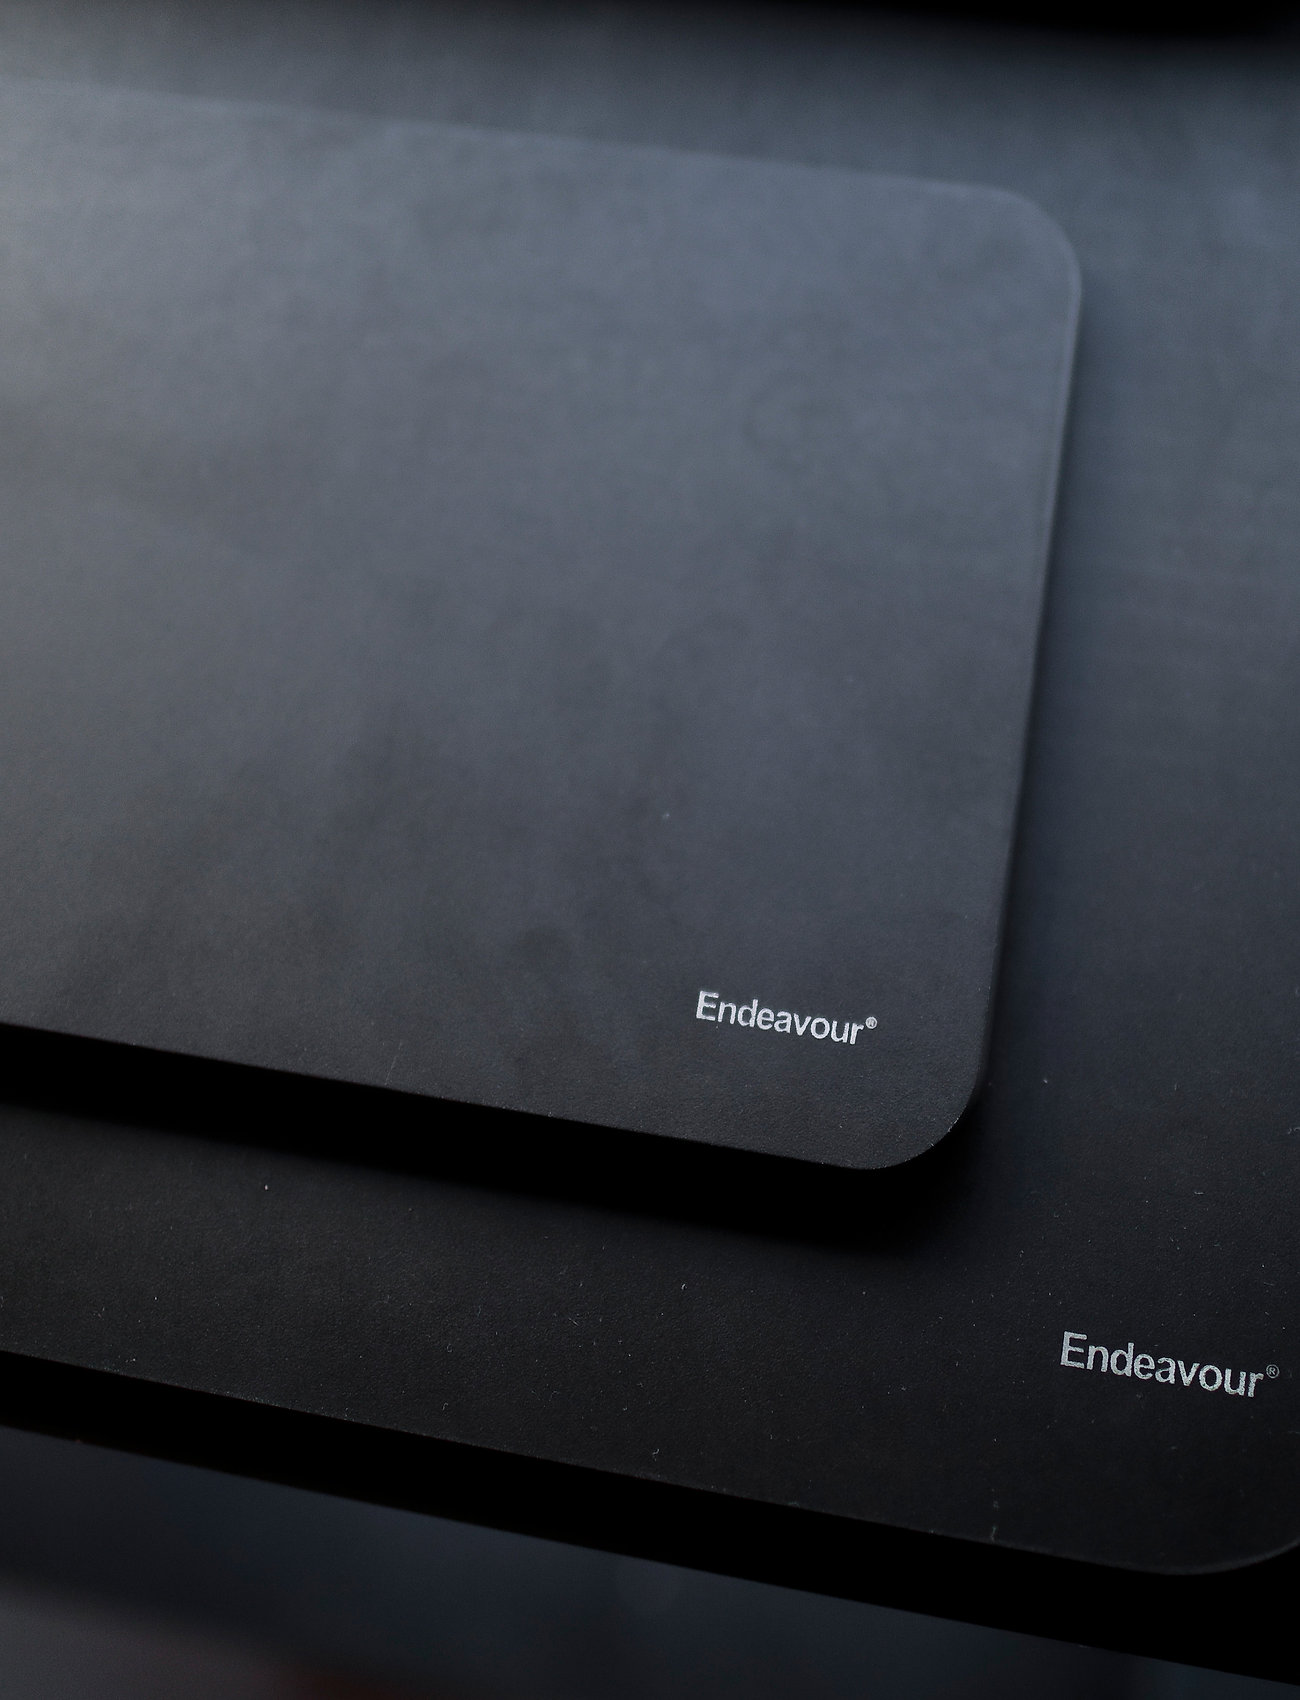 Endeavour - Endeavour® Mediumboard skærebræt - black - 1